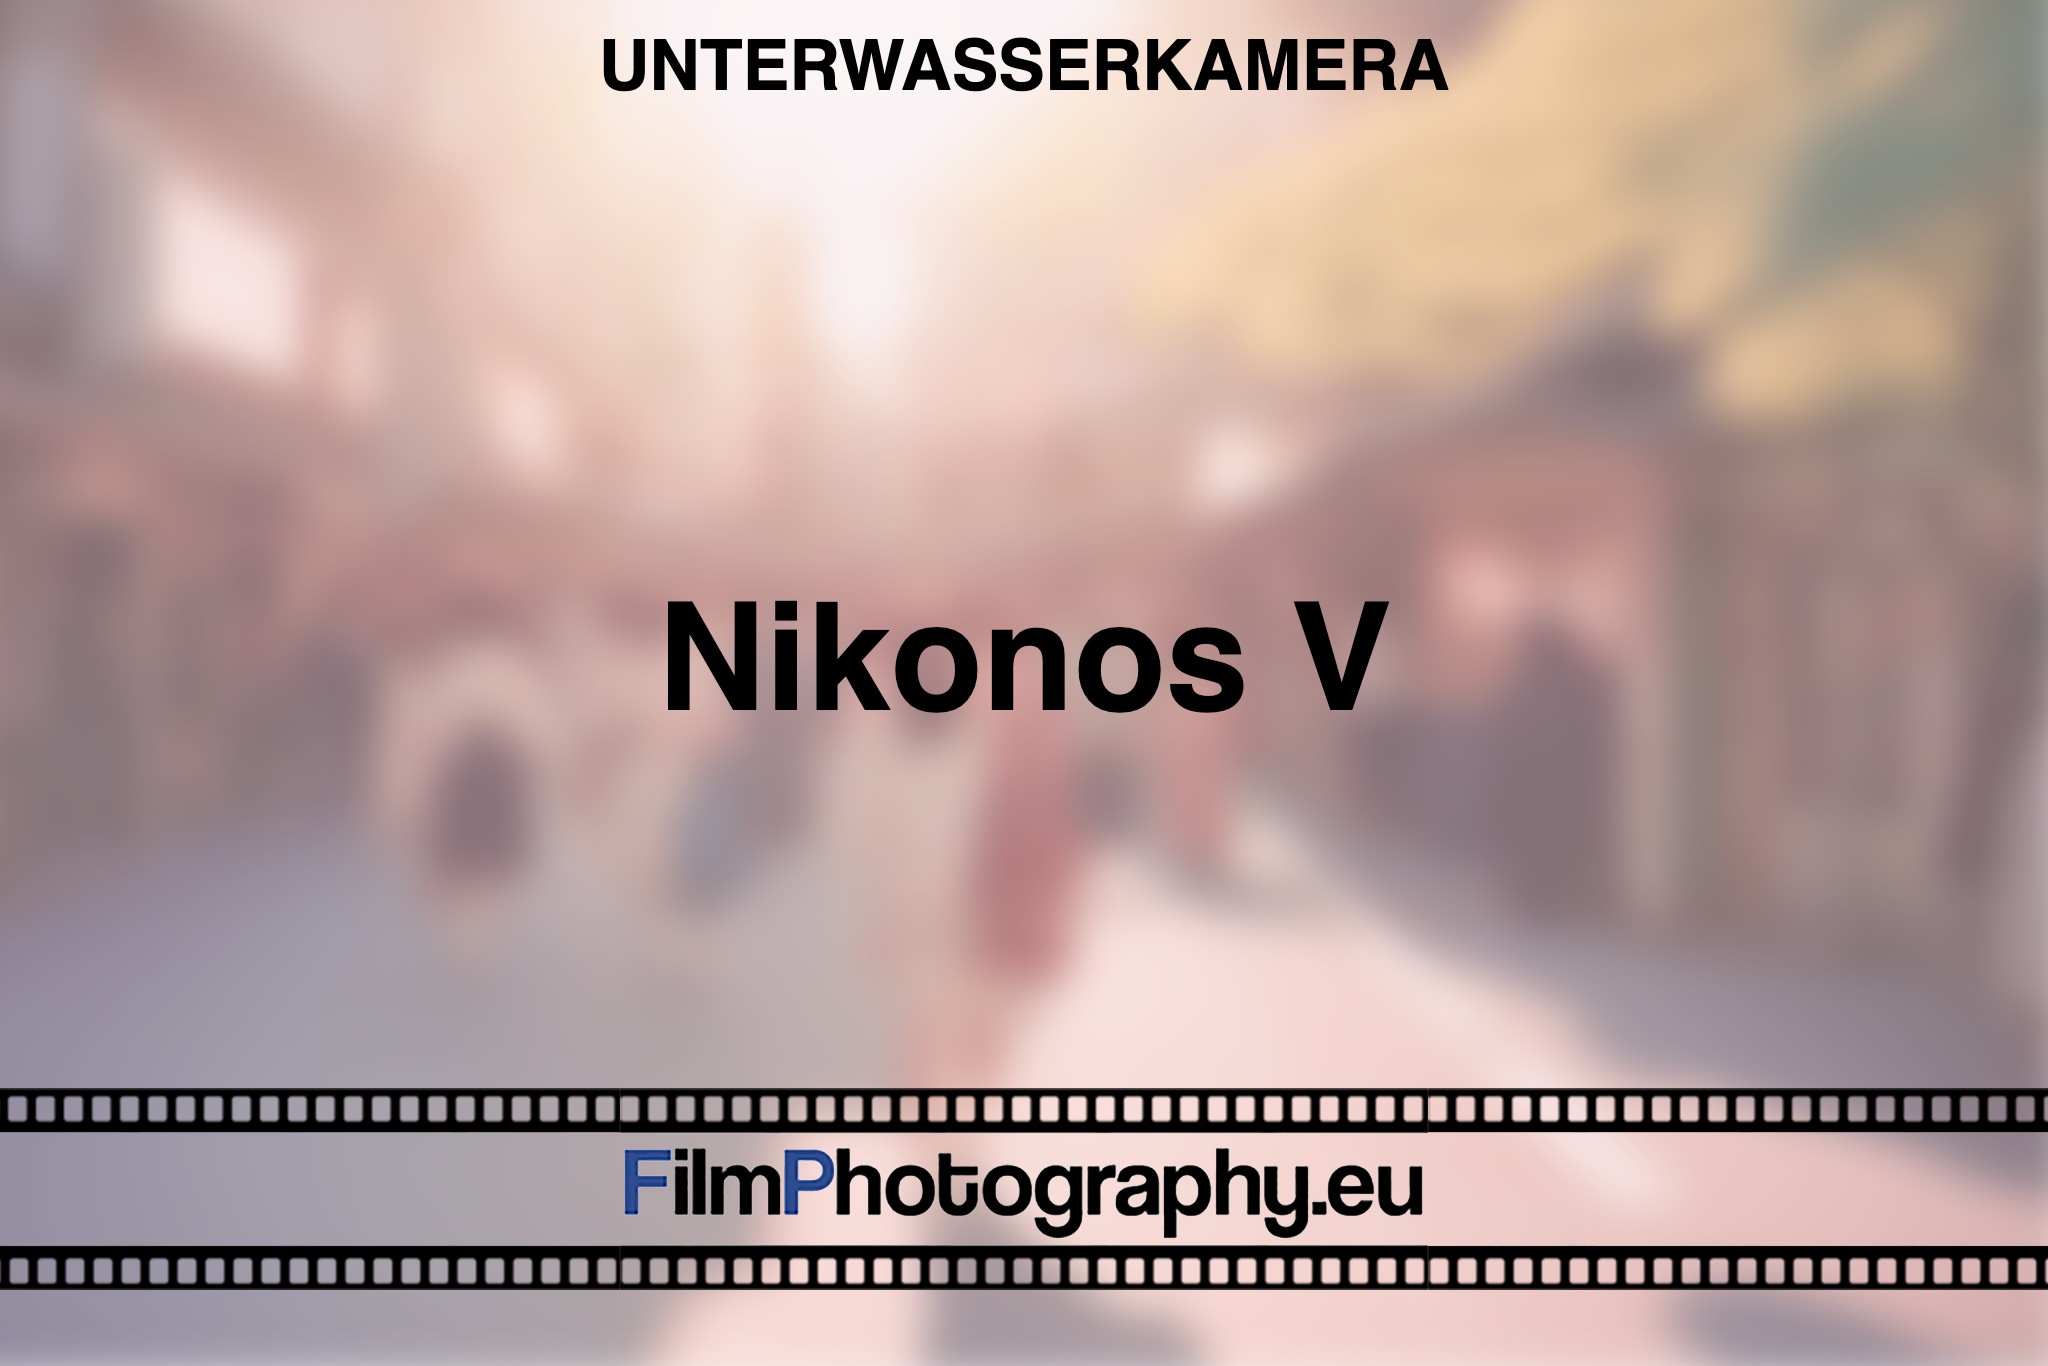 nikonos-v-unterwasserkamera-bnv